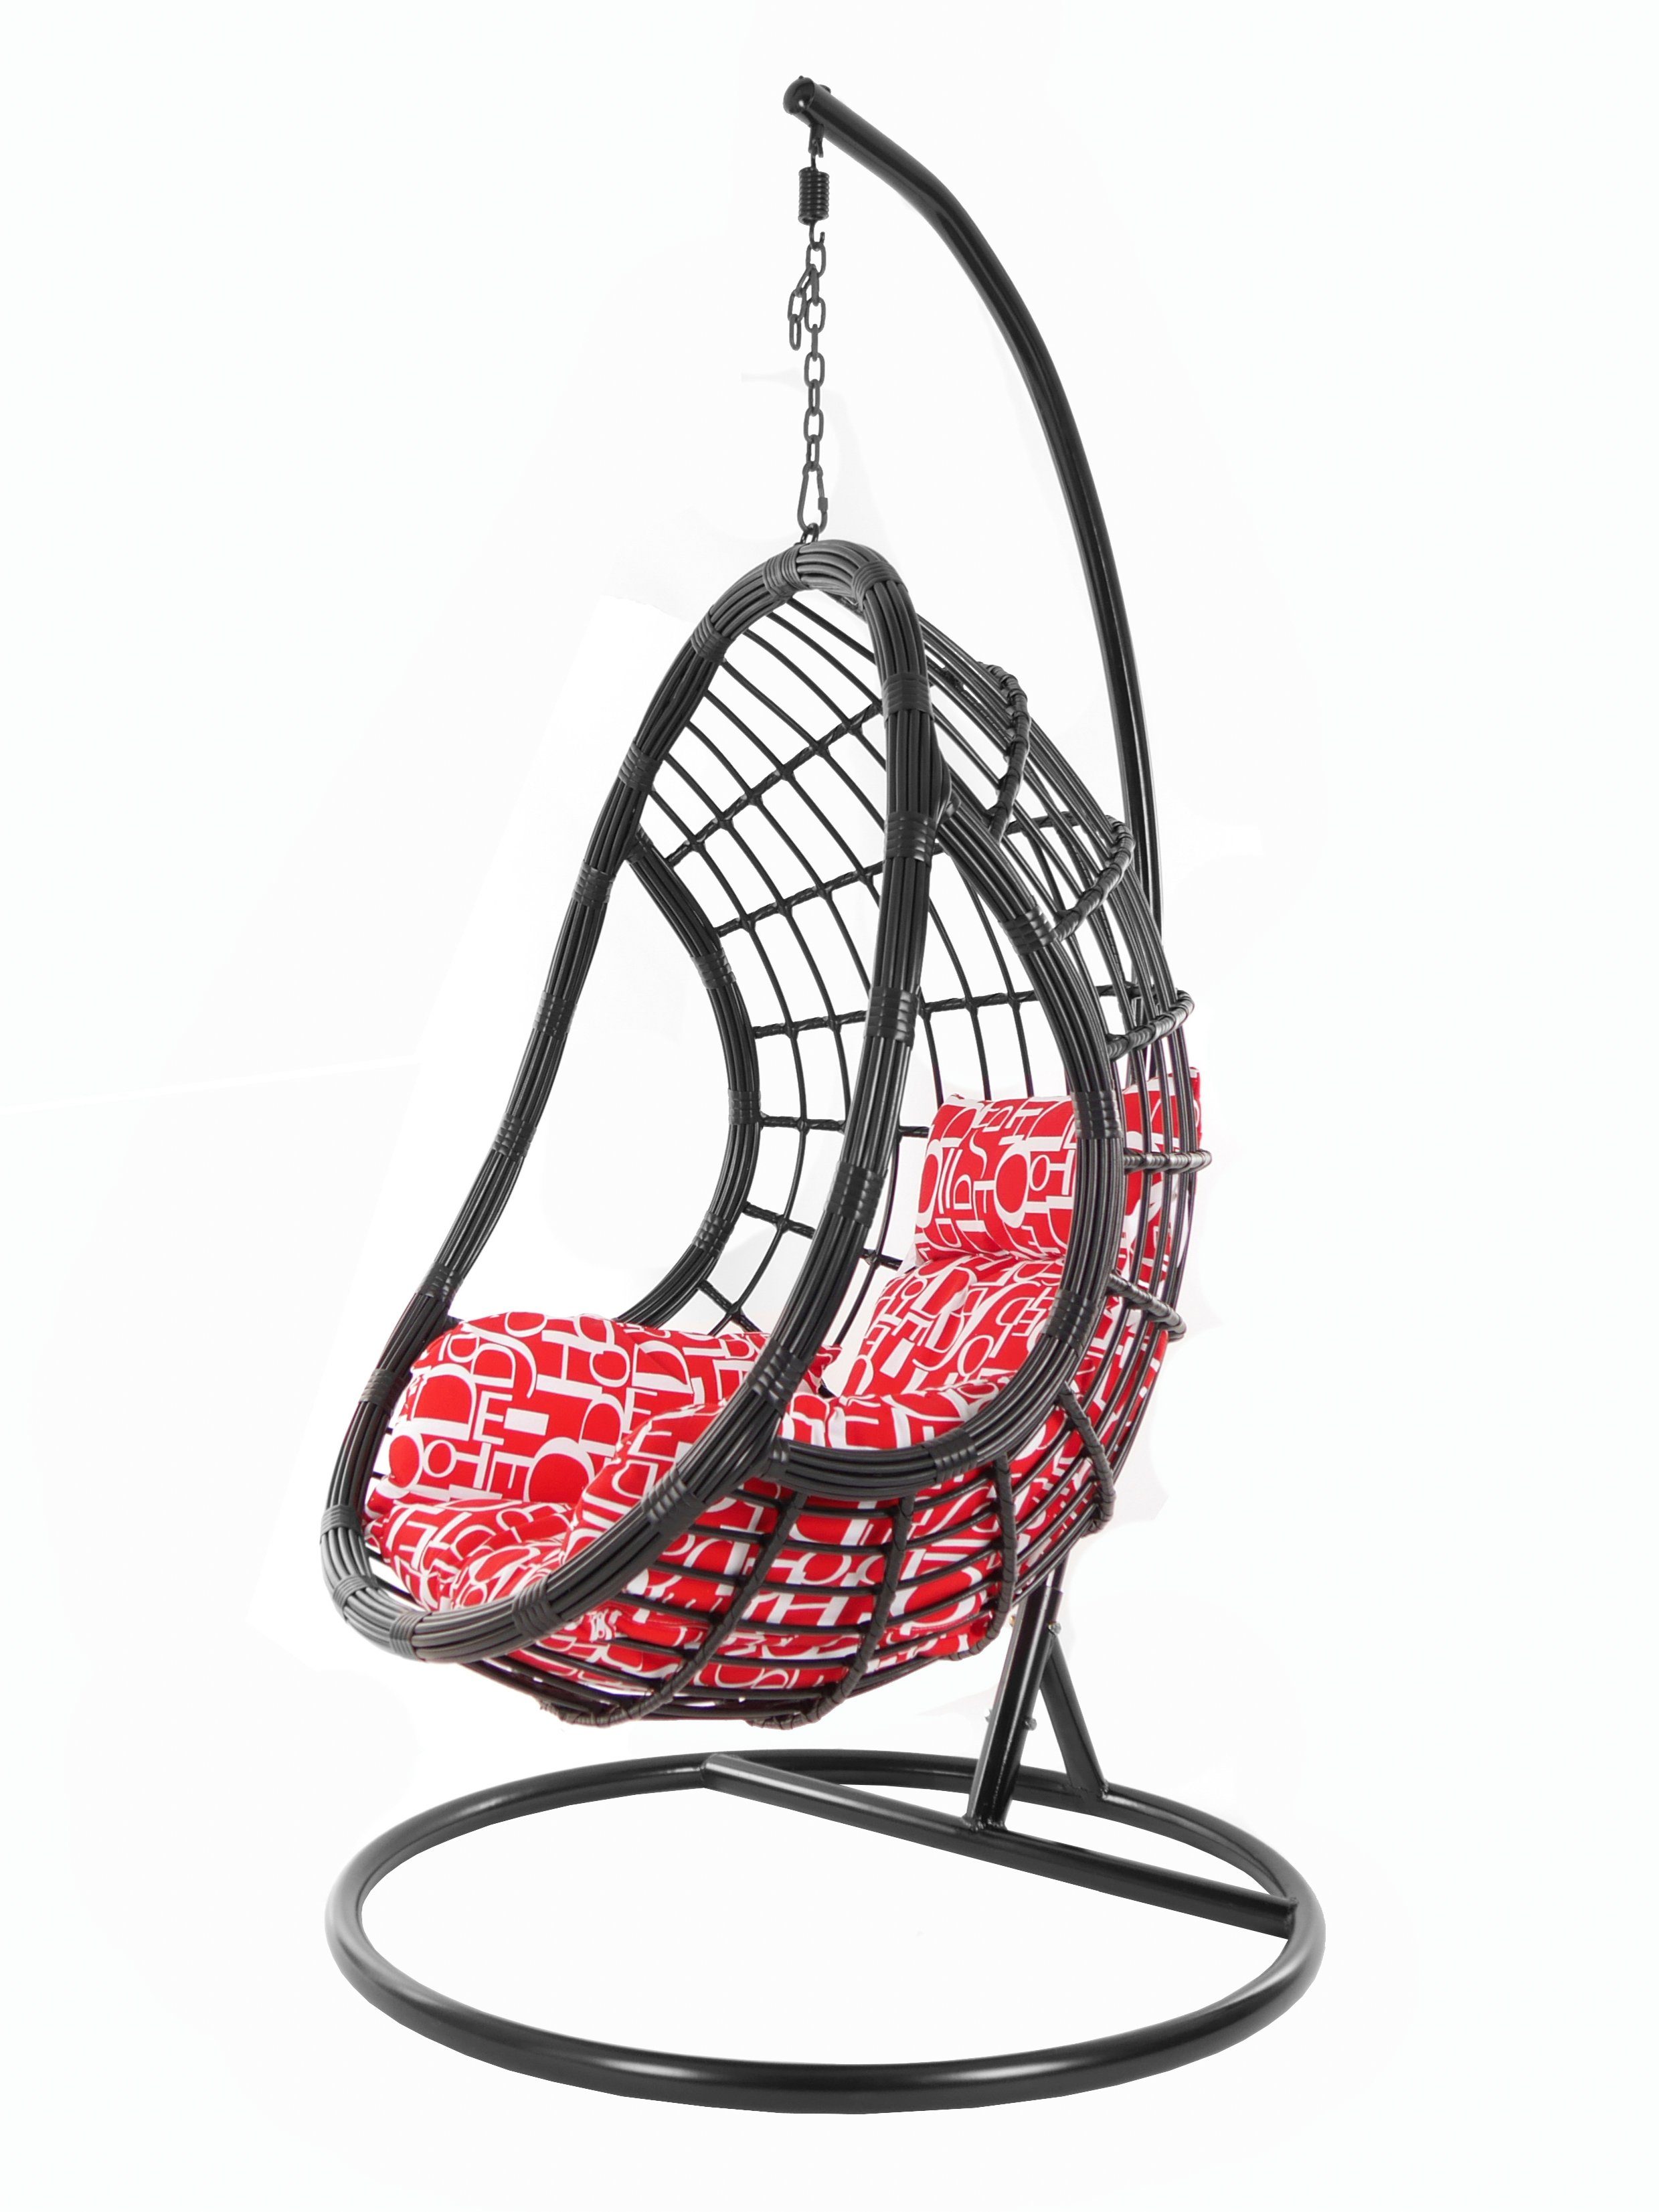 KIDEO Hängesessel PALMANOVA black, Loungemöbel, Swing Chair, Schwarz, Hängesessel mit Gestell und Kissen, Schwebesessel, Muster buchstabenmuster (3100 red letter)